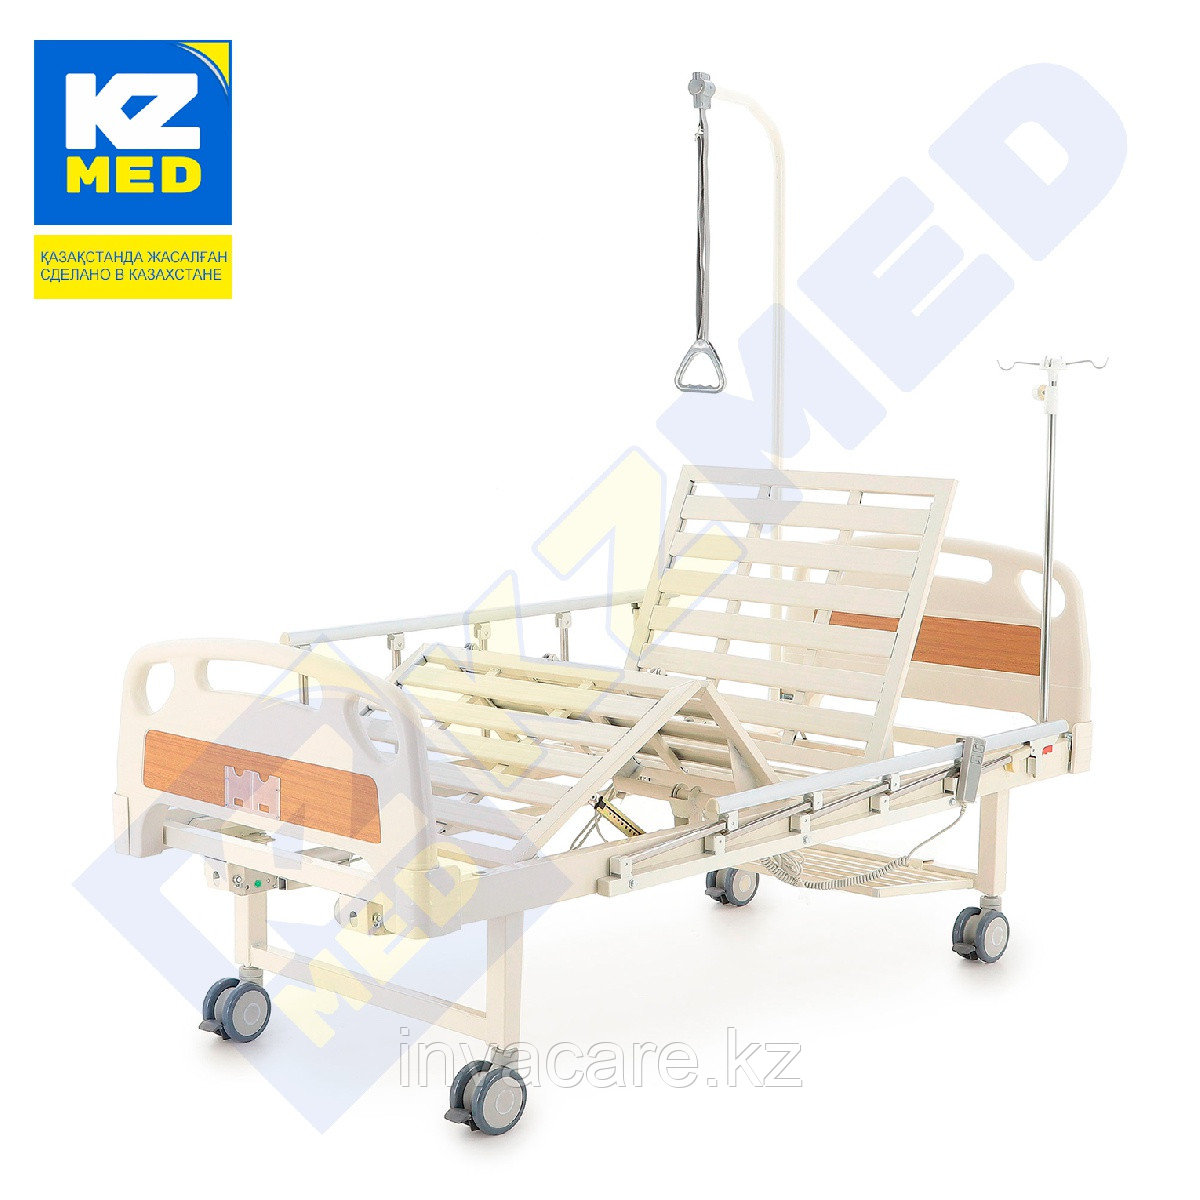 Кровать медицинская "KZMED" (E2F4S спинки ABS), белый